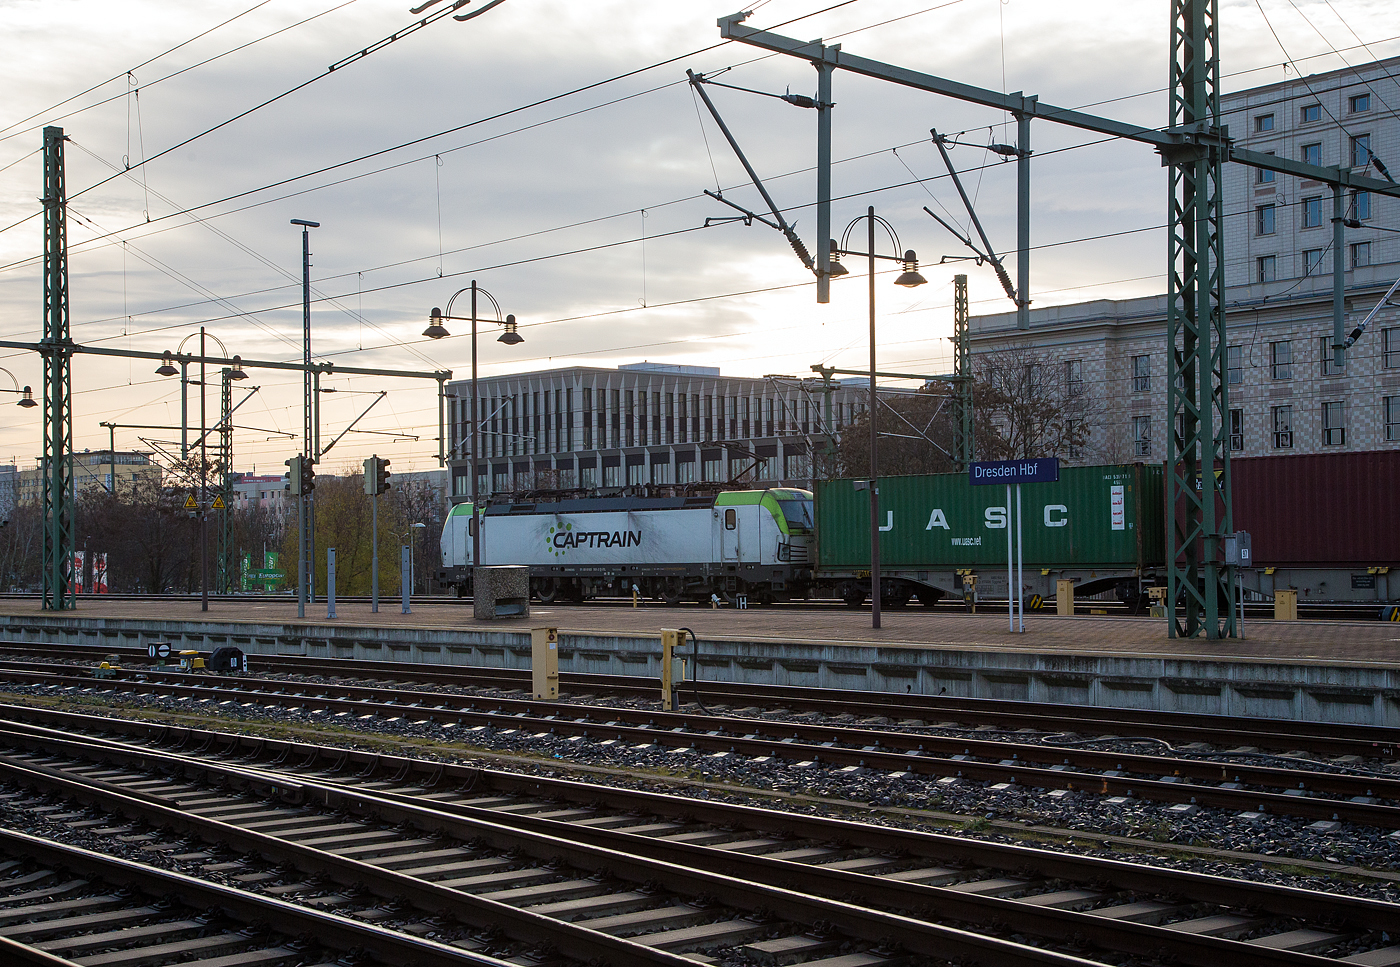 Die Siemens Vectron 193 781-2  (91 80 6193 781-2  D-ITL) der CAPTRAIN Deutschland GmbH / ITL Eisenbahngesellschaft mbH fährt am 08 Dezember 2022 mit einem Containerzug durch den Hauptbahnhof Dresden in Richtung Pirna.

Die Multisystemlokomotive Siemens Vectron MS wurde 2017 von Siemens Mobilitiy in München-Allach unter der Fabriknummer 22198 gebaut. Die Vectron MS mit einer Leistung von 6.4 MW ist für 160 km/h, in Deutschland, Österreich, Ungarn, Polen, Tschechien und der Slowakei (D/A/H/PL/CZ/SK) zugelassen.

Captrain ist das Gesicht der SNCF außerhalb Frankreichs. Die SNCF Logistics ist die Transport- und Logistiksparte der französischen Société Nationale des Chemins de fer Français (SNCF).  Die ITL Eisenbahngesellschaft mbH (ITL) mit Sitz in Dresden gehört seit Dezember 2010 vollständig zur SNCF-Gruppe und ist Teil des Captrain-Netzes.